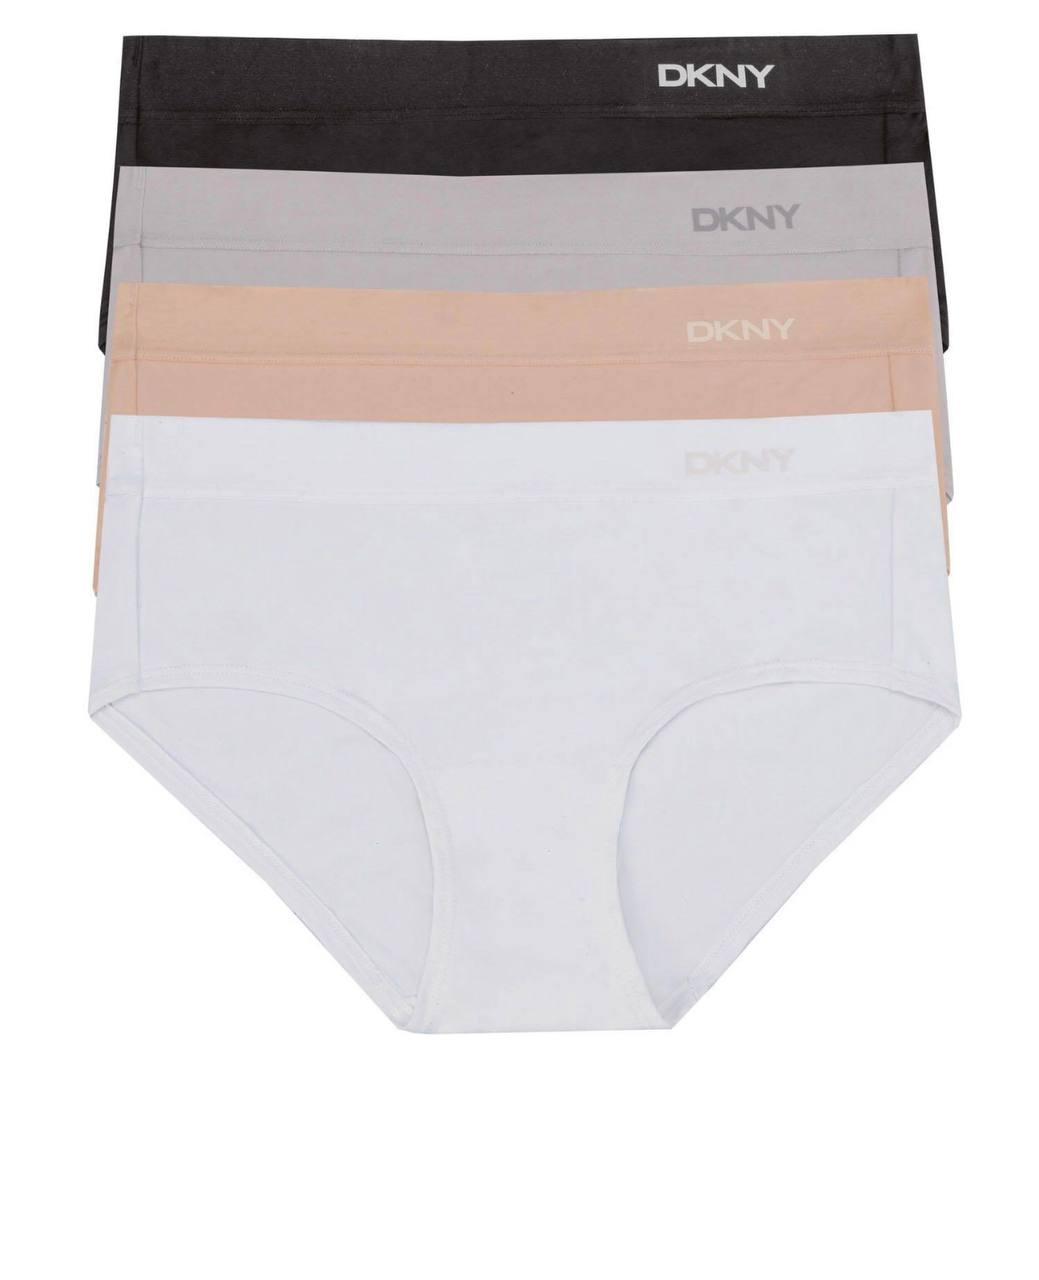 Dkny underwear  set